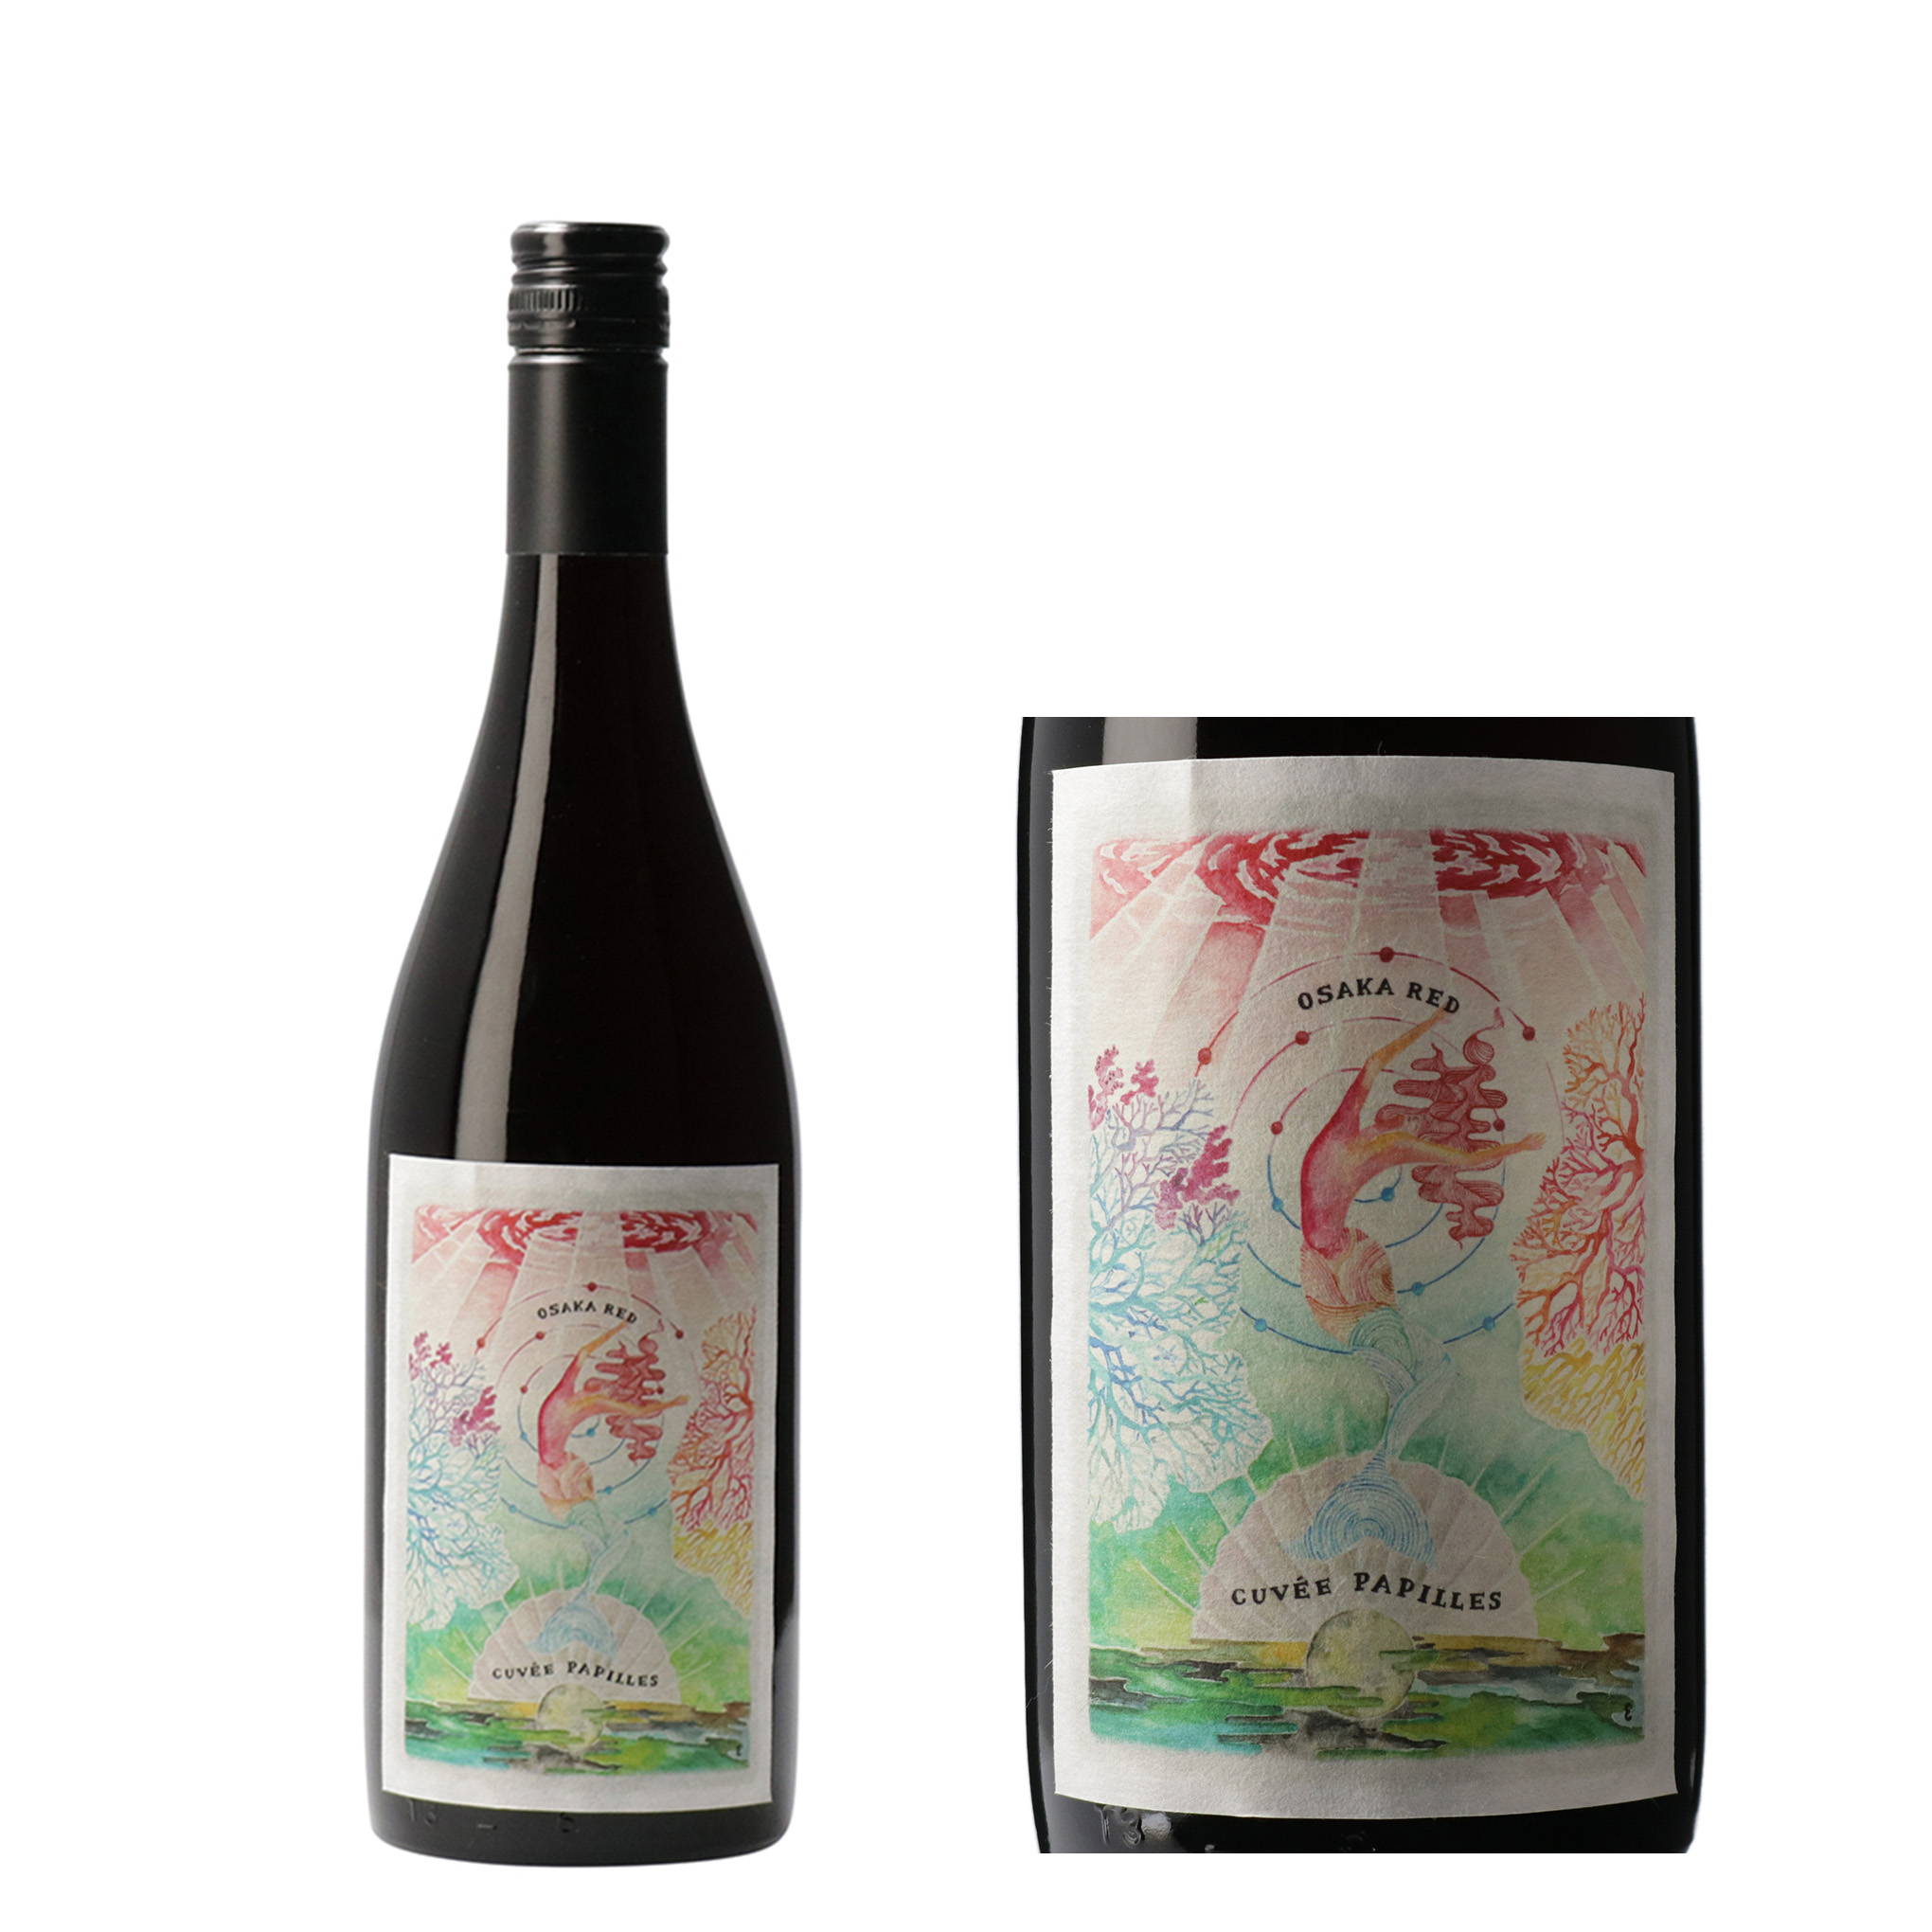 2019年は、フジマル醸造所がワインを造り始めてから10回目のヴィンテージ。『島之内フジマル醸造所』の記念すべき赤ワイン『キュベパピーユ 大阪RED 2019年』。